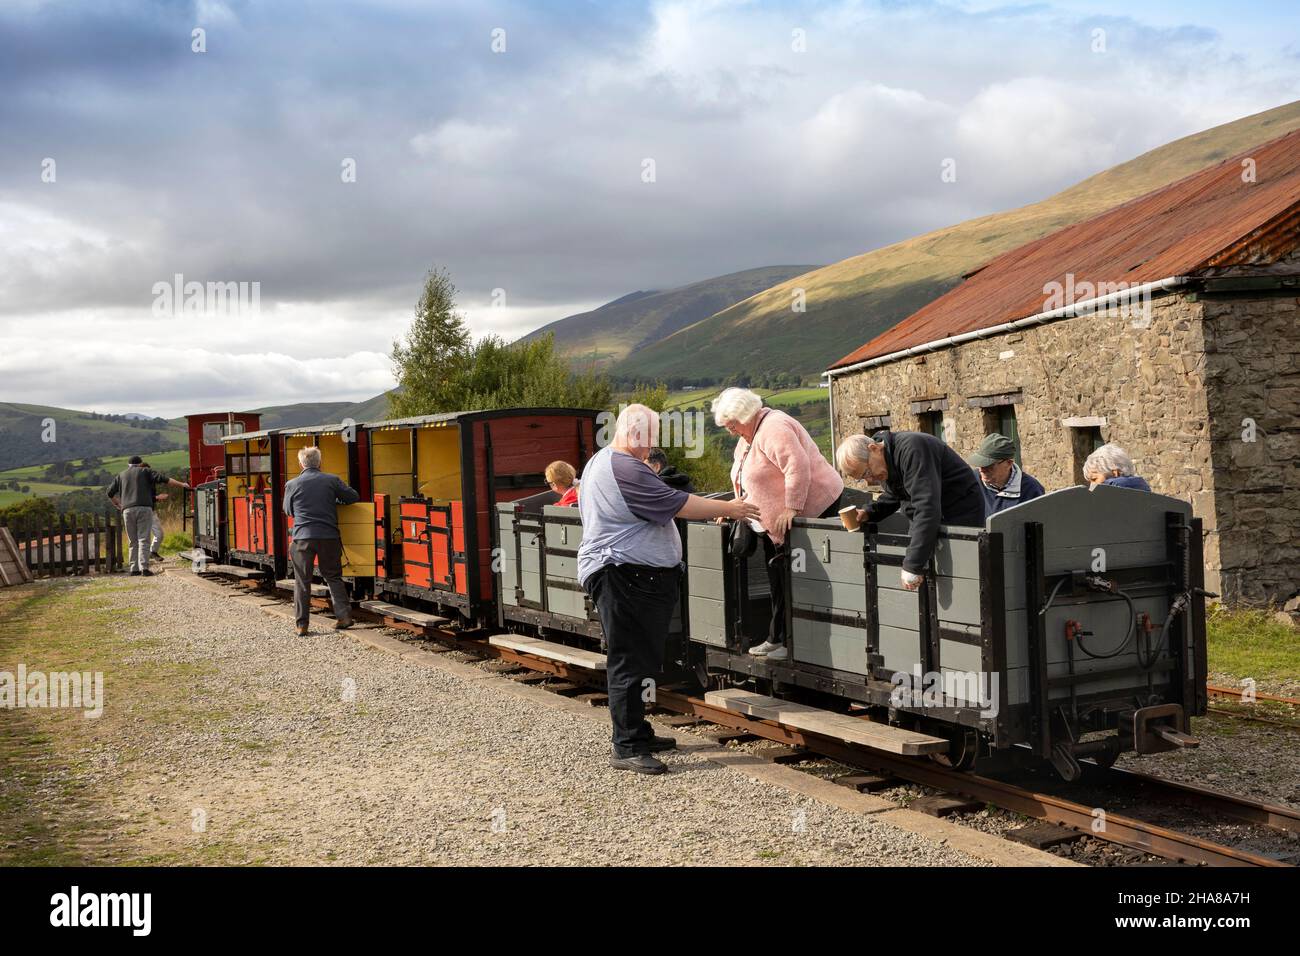 Royaume-Uni, Cumbria, Allerdale, Keswick, Threlkeld,musée de la carrière, touristes débarquant en train Banque D'Images